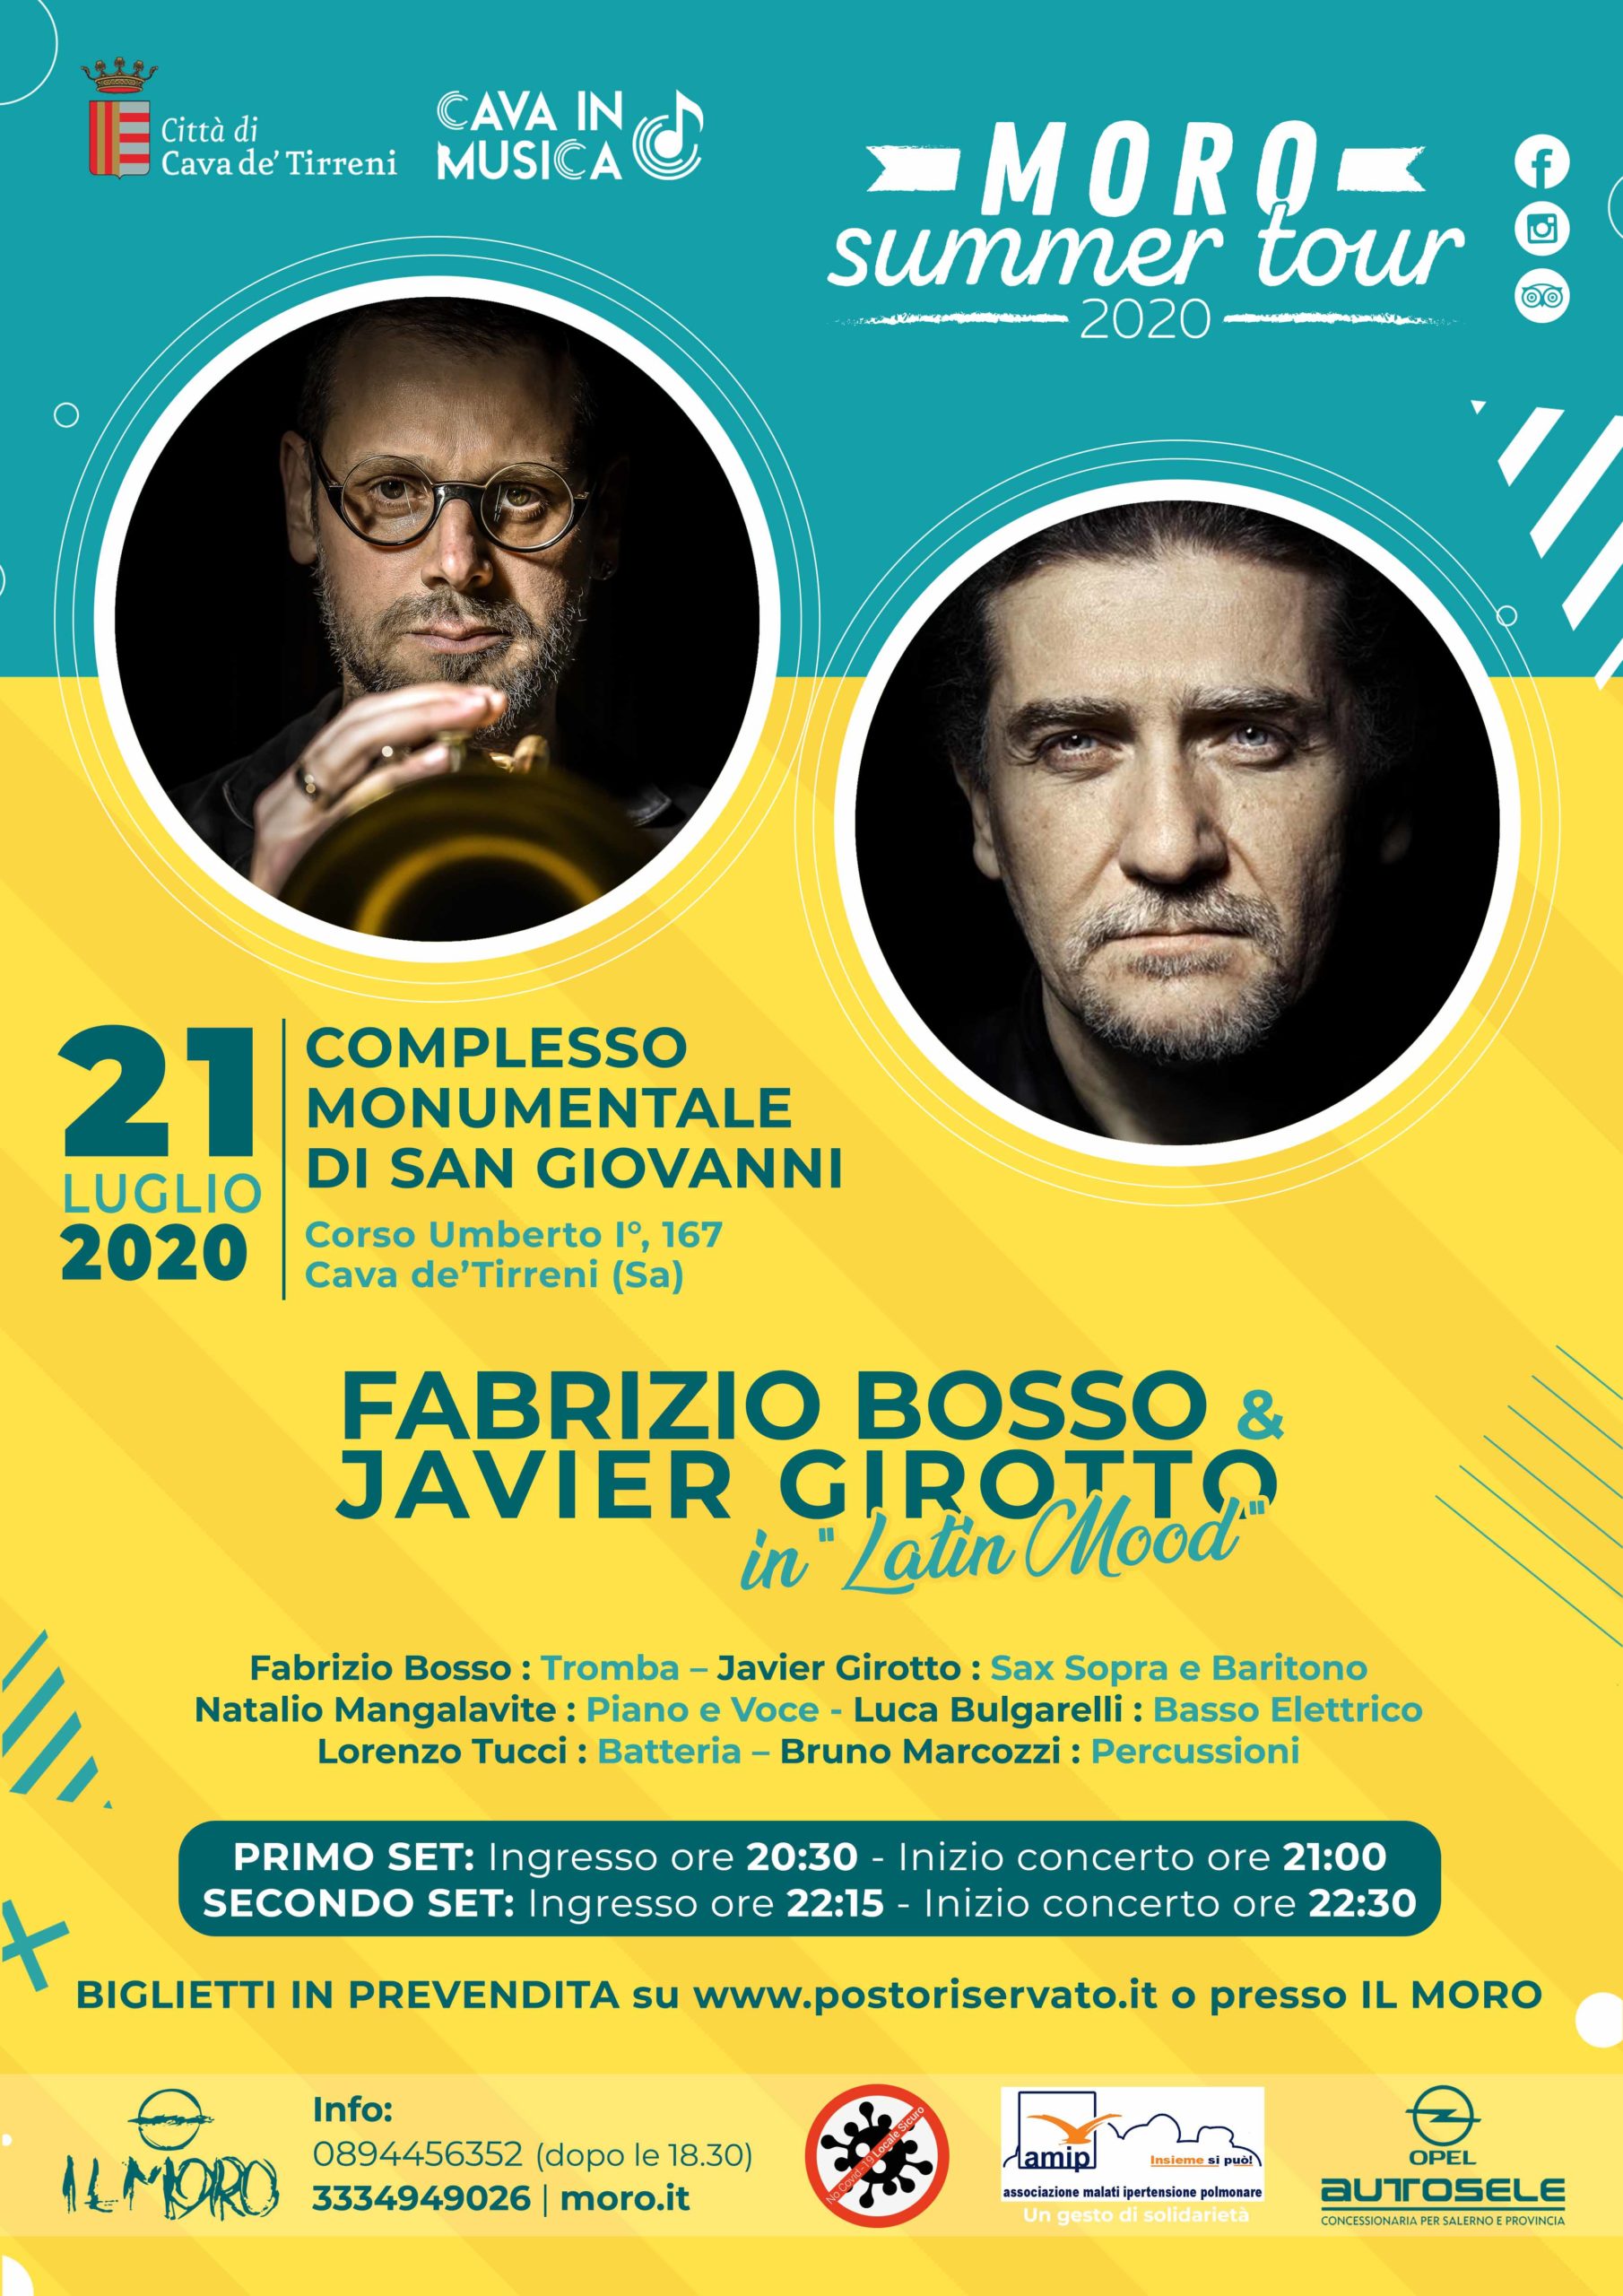 Pub Il Moro: Questa sera Fabrizio Bosso & Javier Girotto in “Latin Mood”